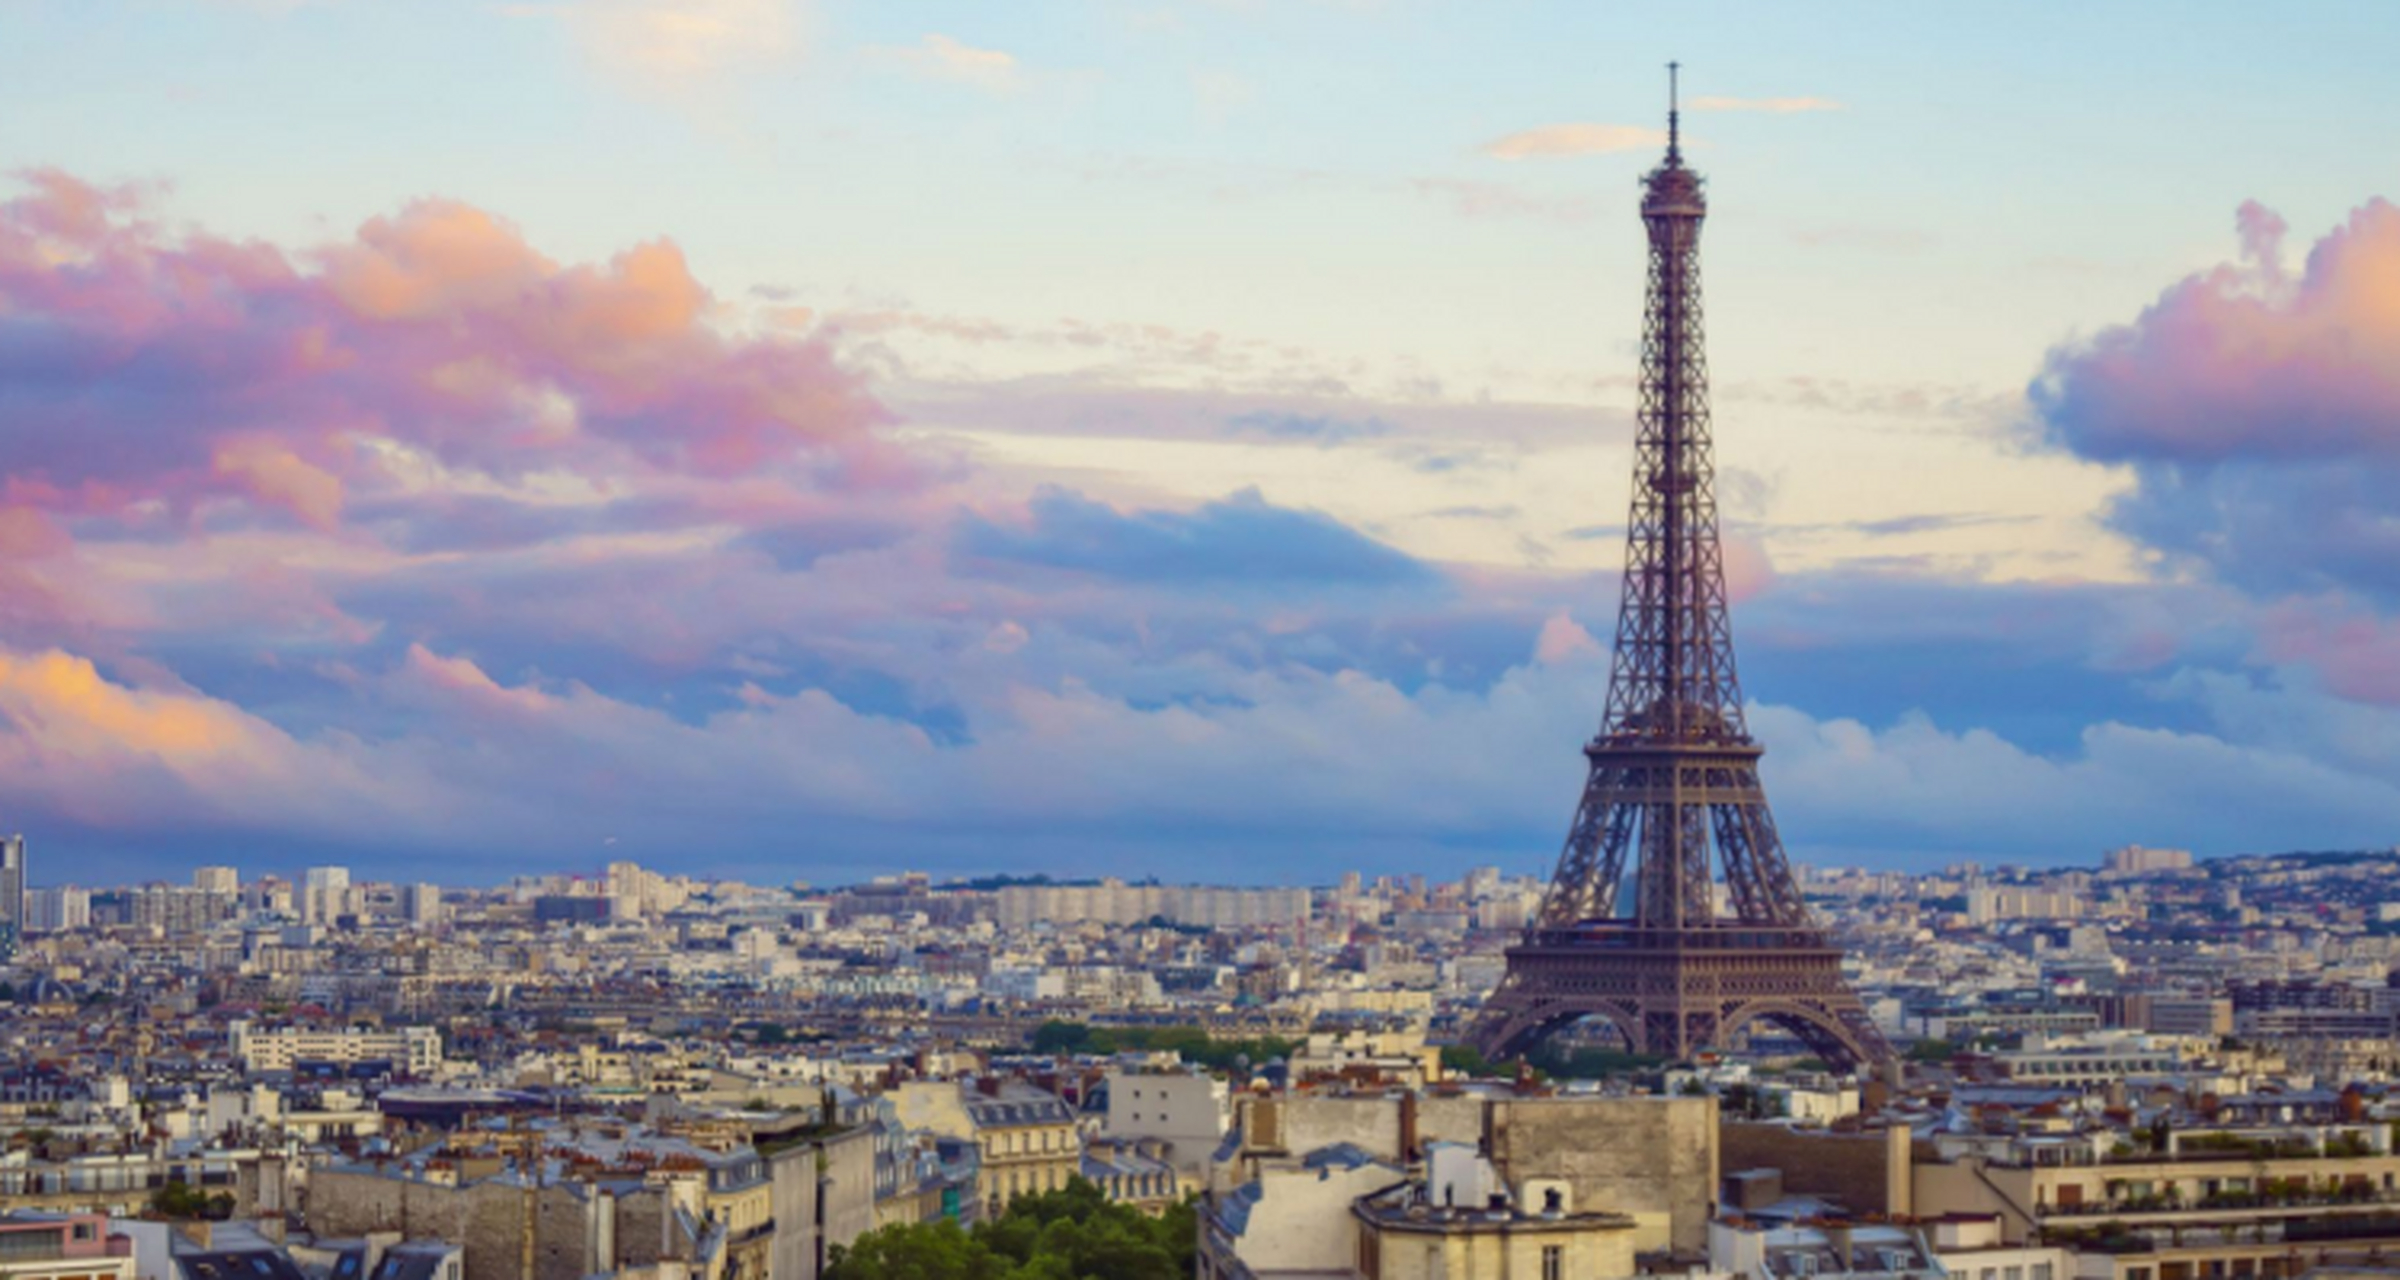 全球最美的风景名胜 巴黎艾菲尔铁塔 艾菲尔铁塔是法国巴黎的一座标志